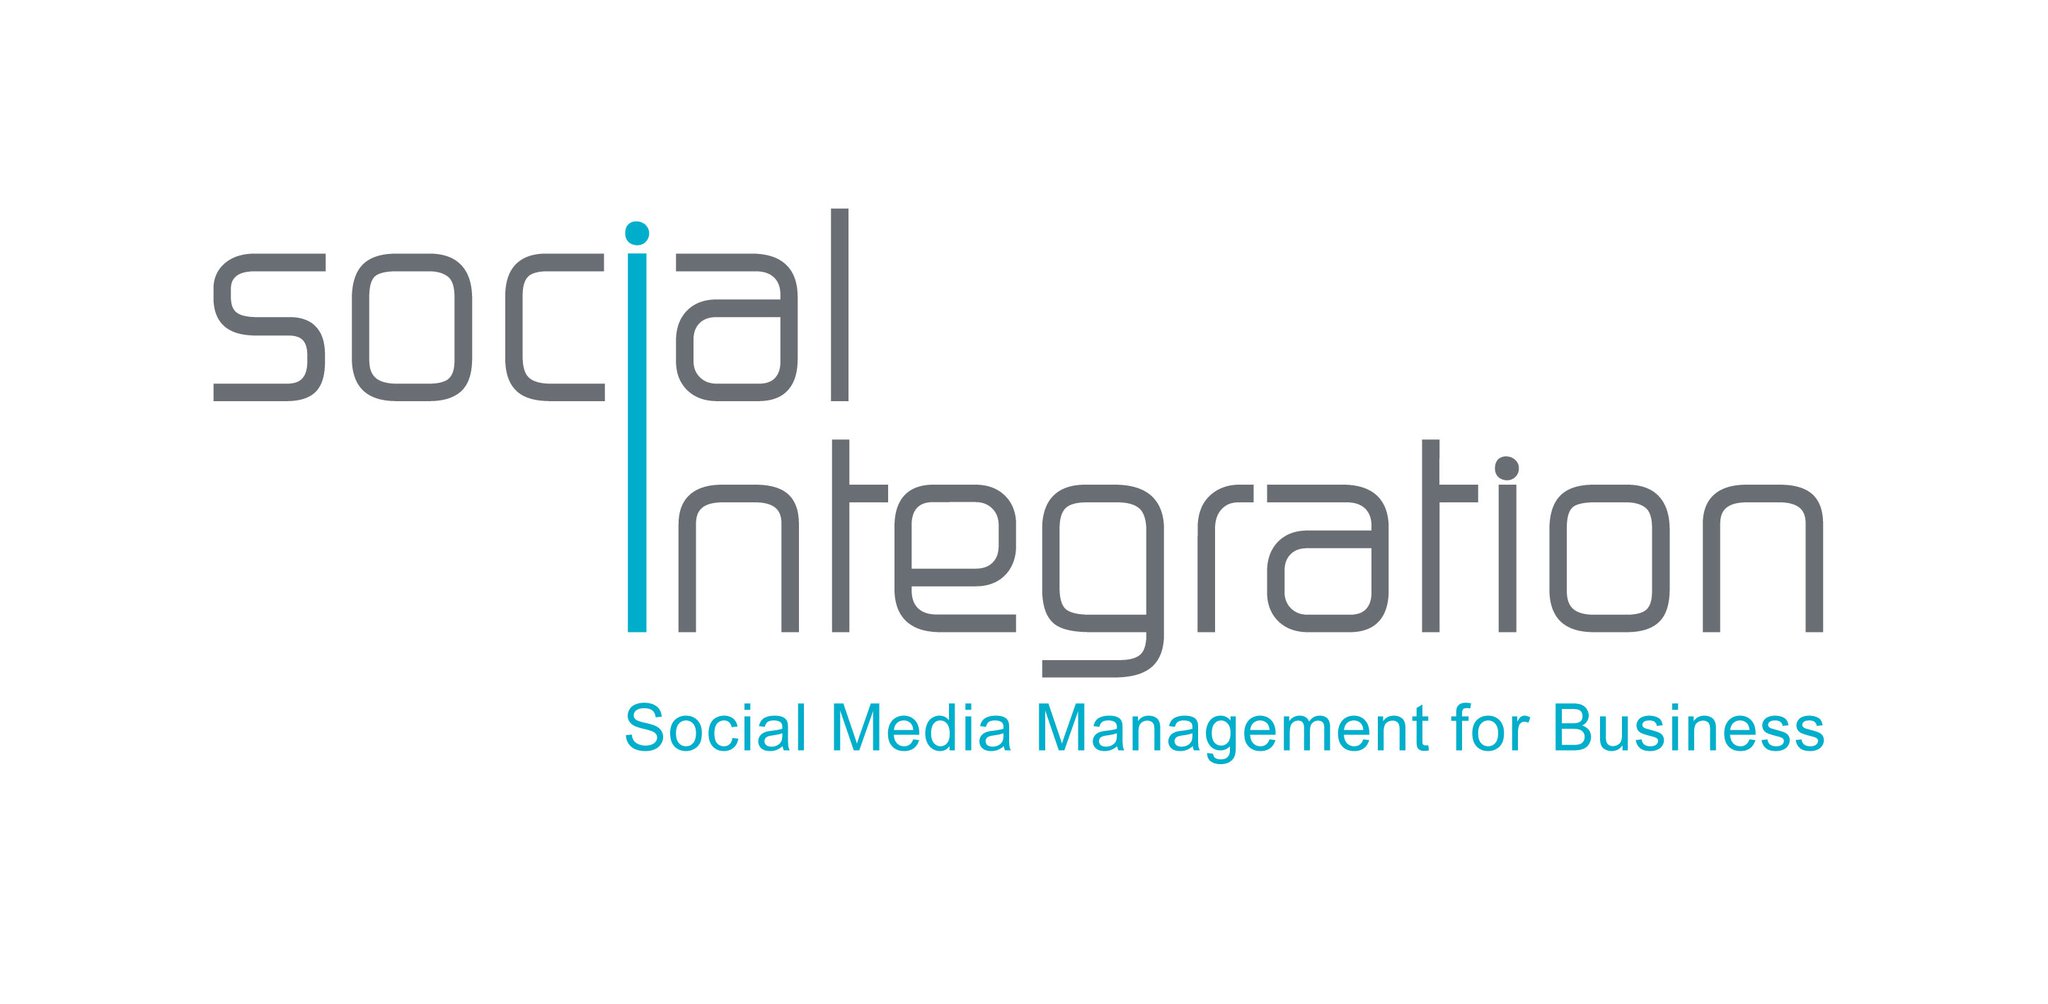 Social Integration